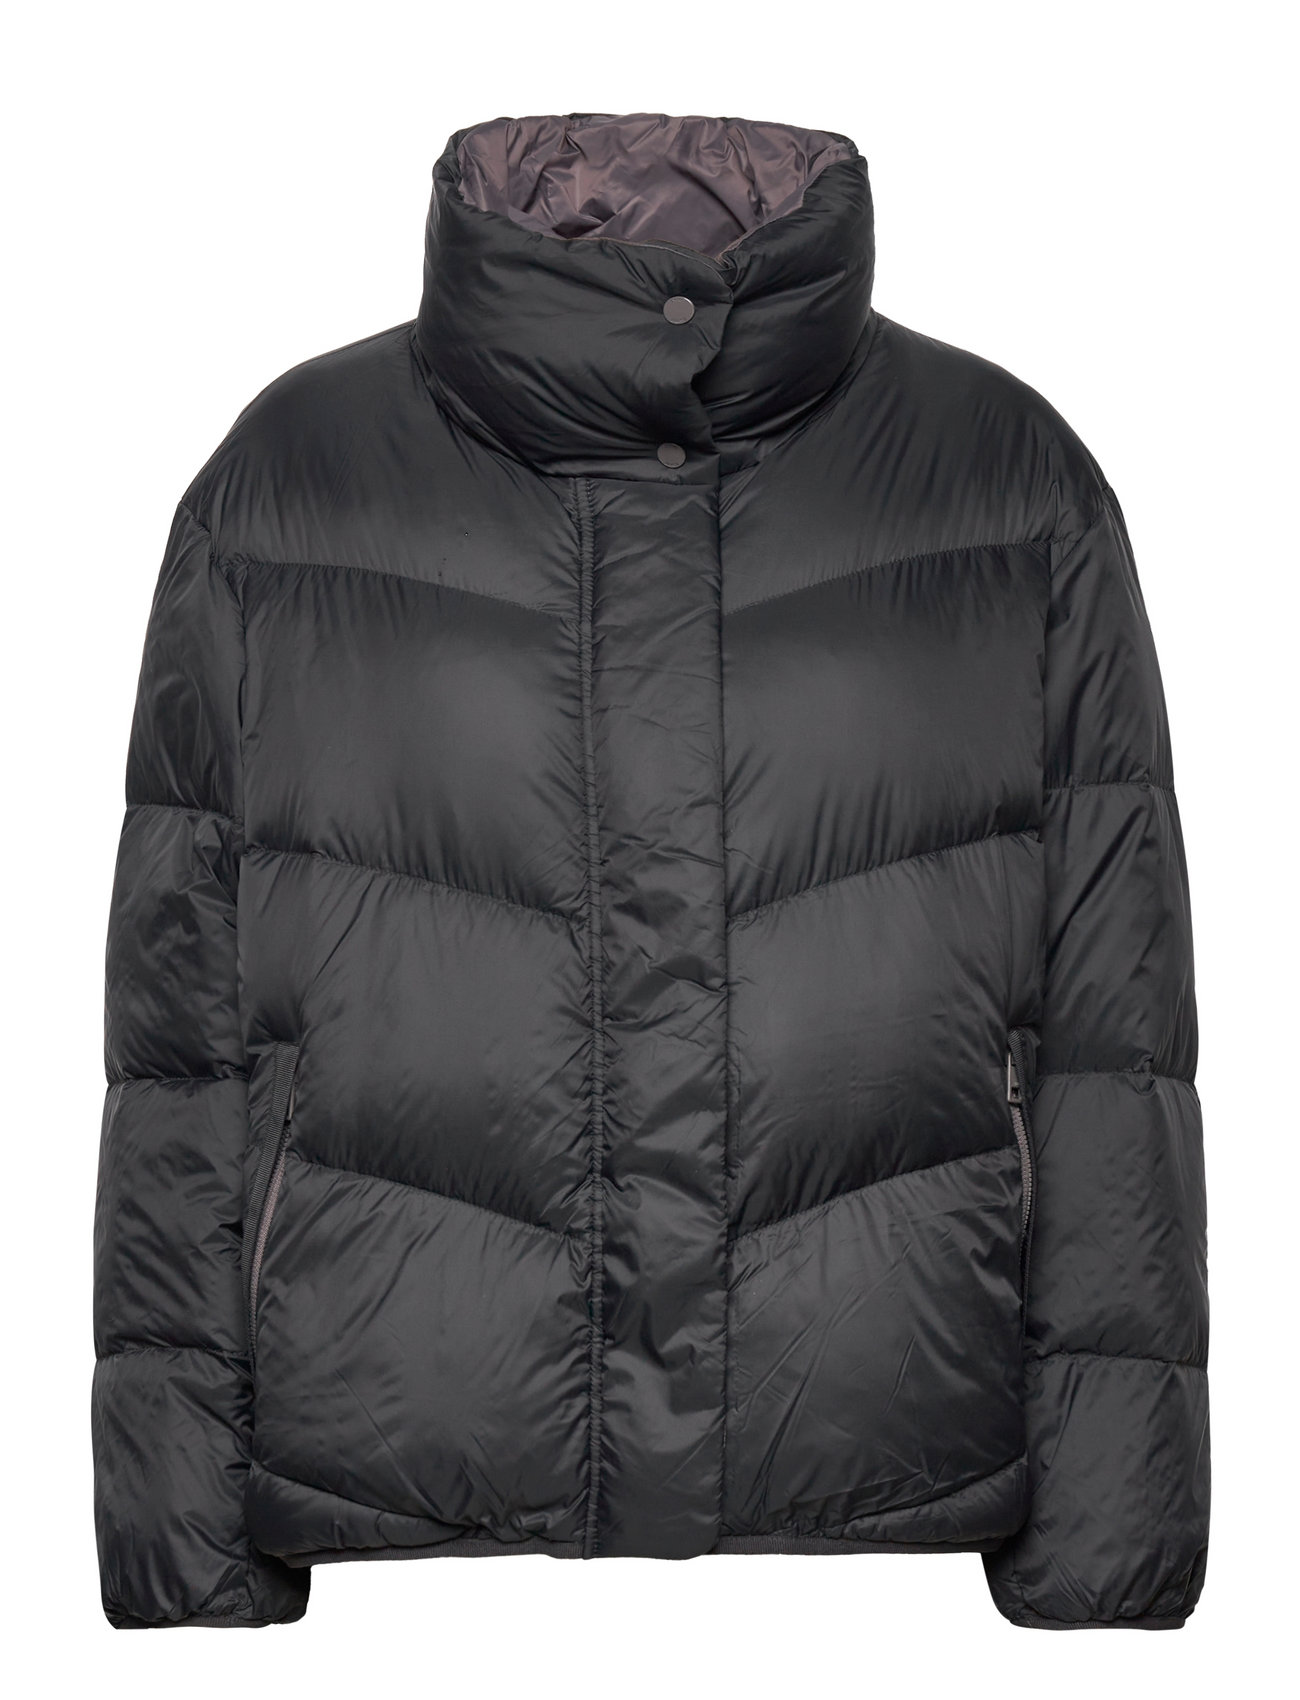 Esprit Casual Quilted Jacket With Recycled Filling - kr. Køb Forede jakker fra Esprit online på Boozt.com. Hurtig levering & nem retur